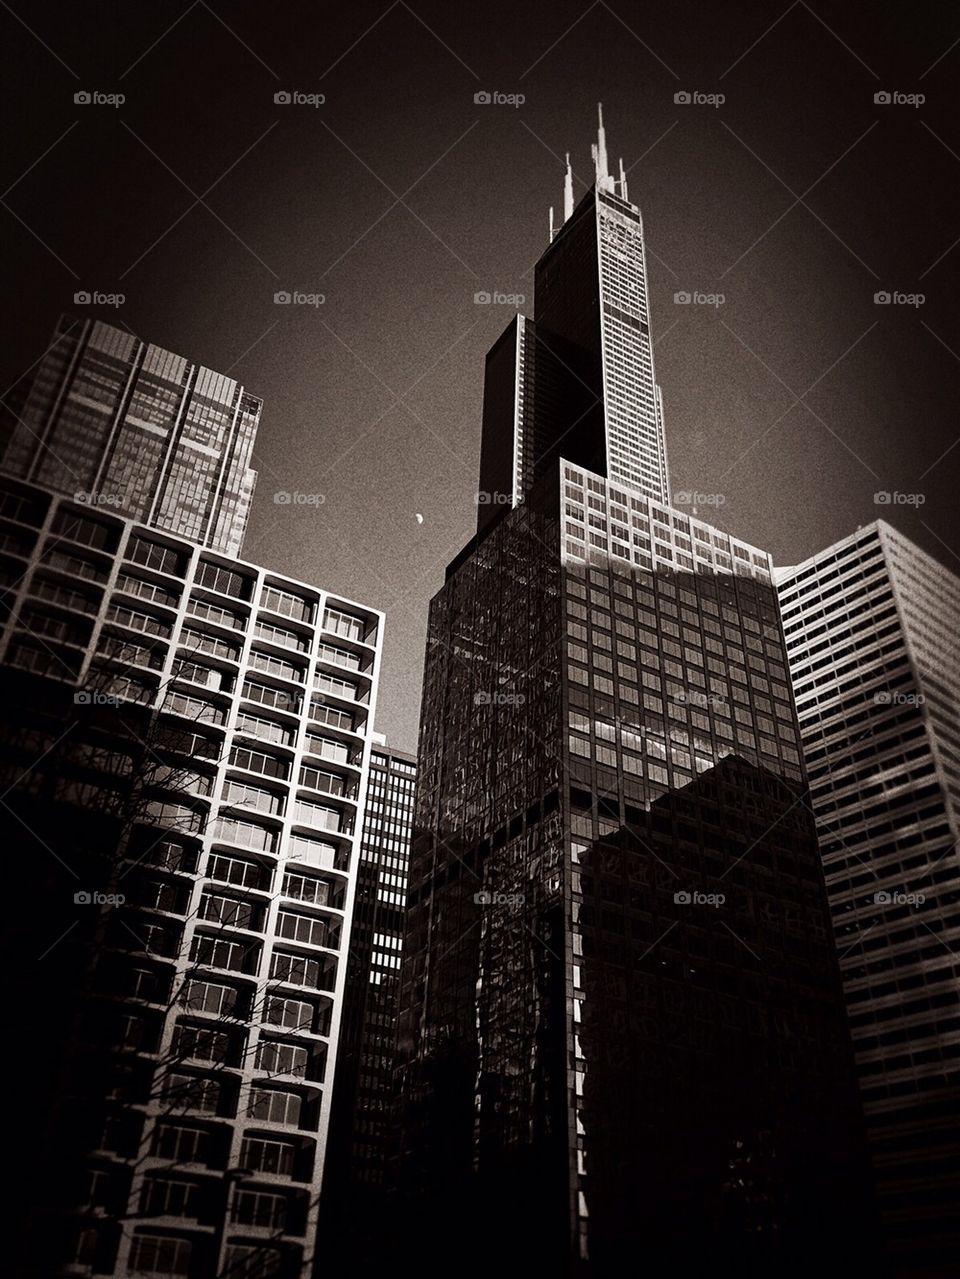 Sears tower 